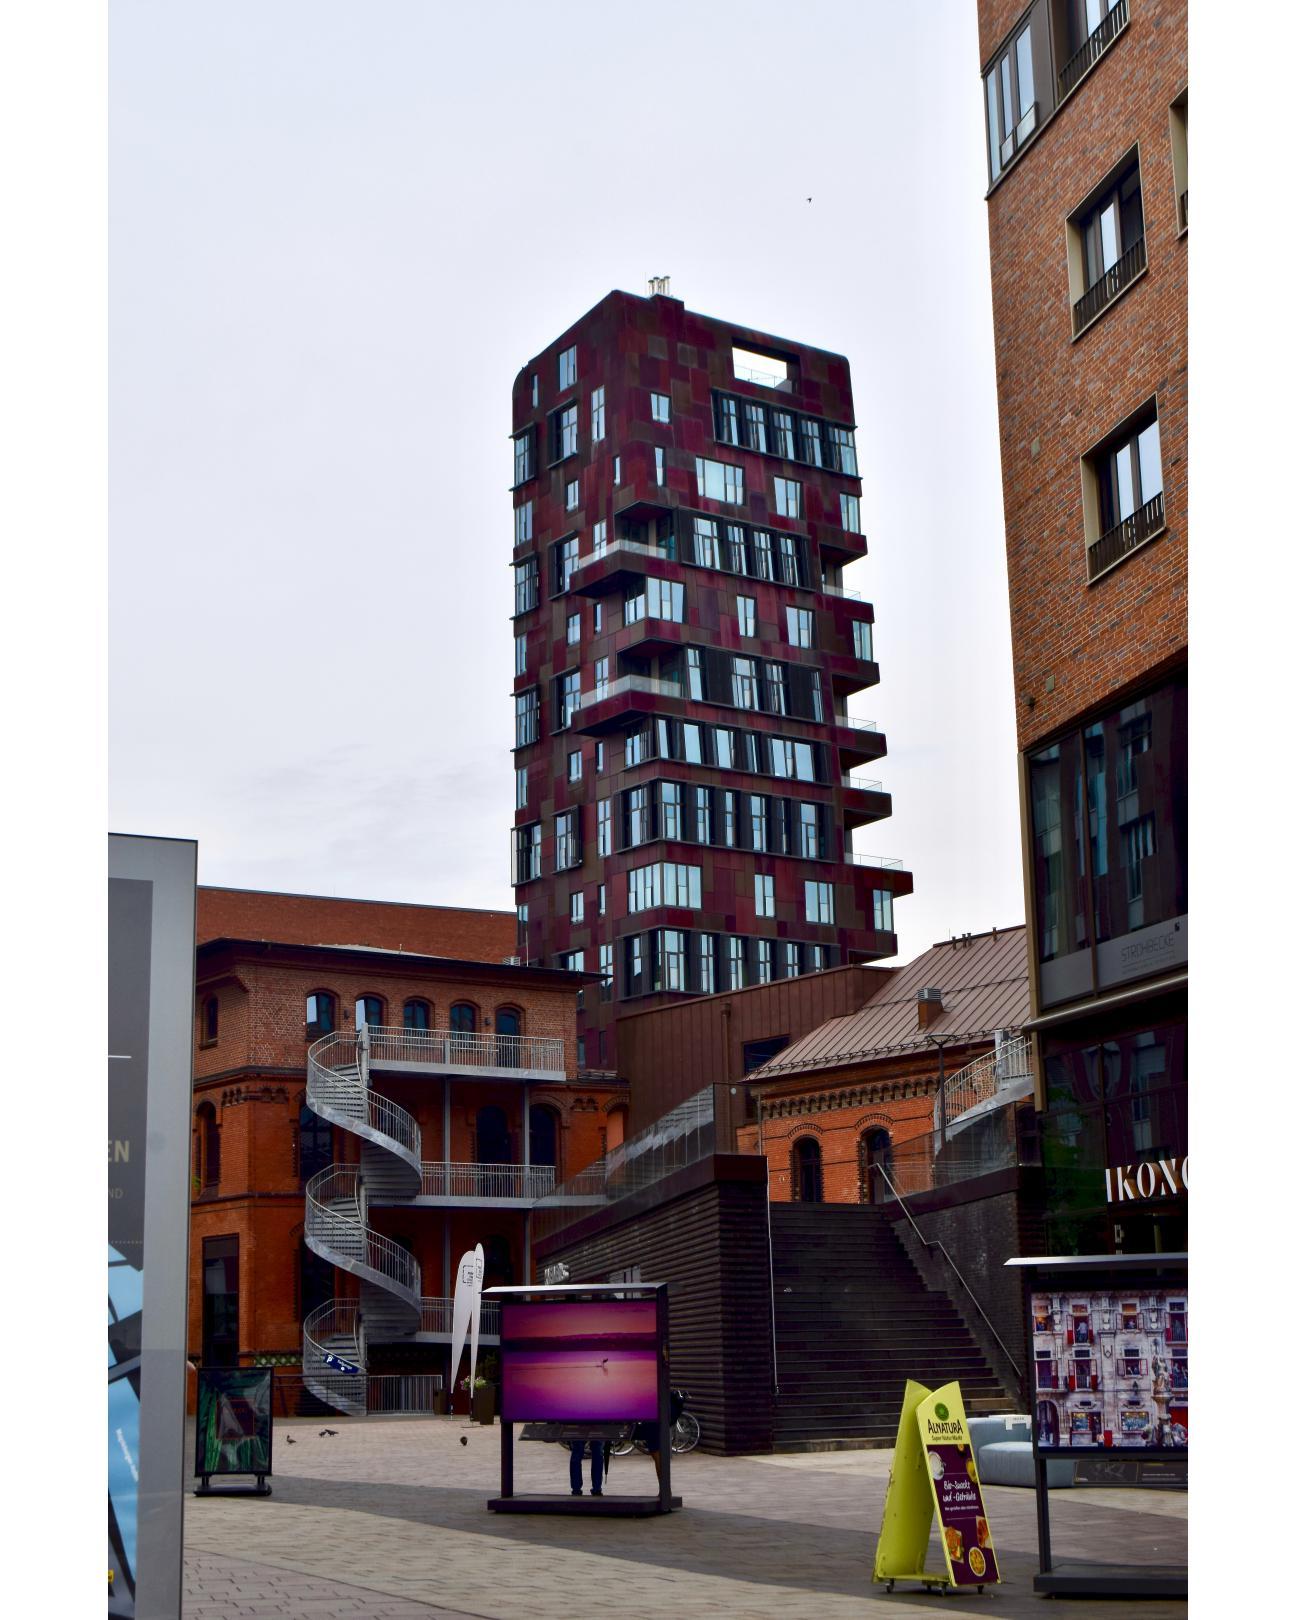 Ein Gebäude in der Hafencity, vor ein paar Jahren fotografiert.A building in the Hafencity, photographed a few years ago.#bebäude #hafencity #jahren #fotografiert #foto #hamburg #hh #hh_lieben #hochhaus #haus #building #hafencity #years #photographed #hamburg #hh #hh_love #high rise #house #photo